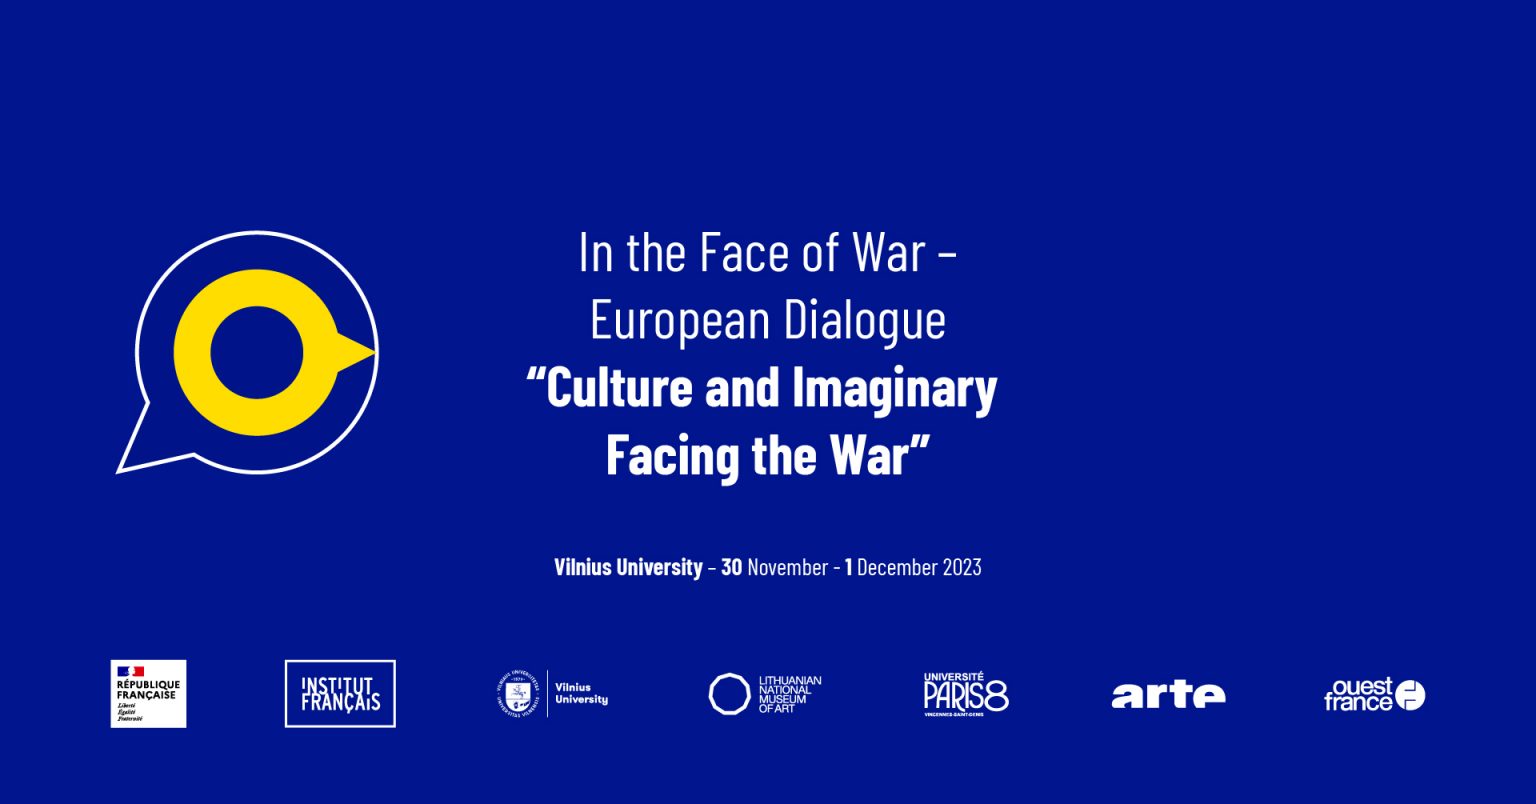 VU_Culture-and-Imaginary-Facing-the-War_FB-vent-cover_1920x1005-1536x804.jpg